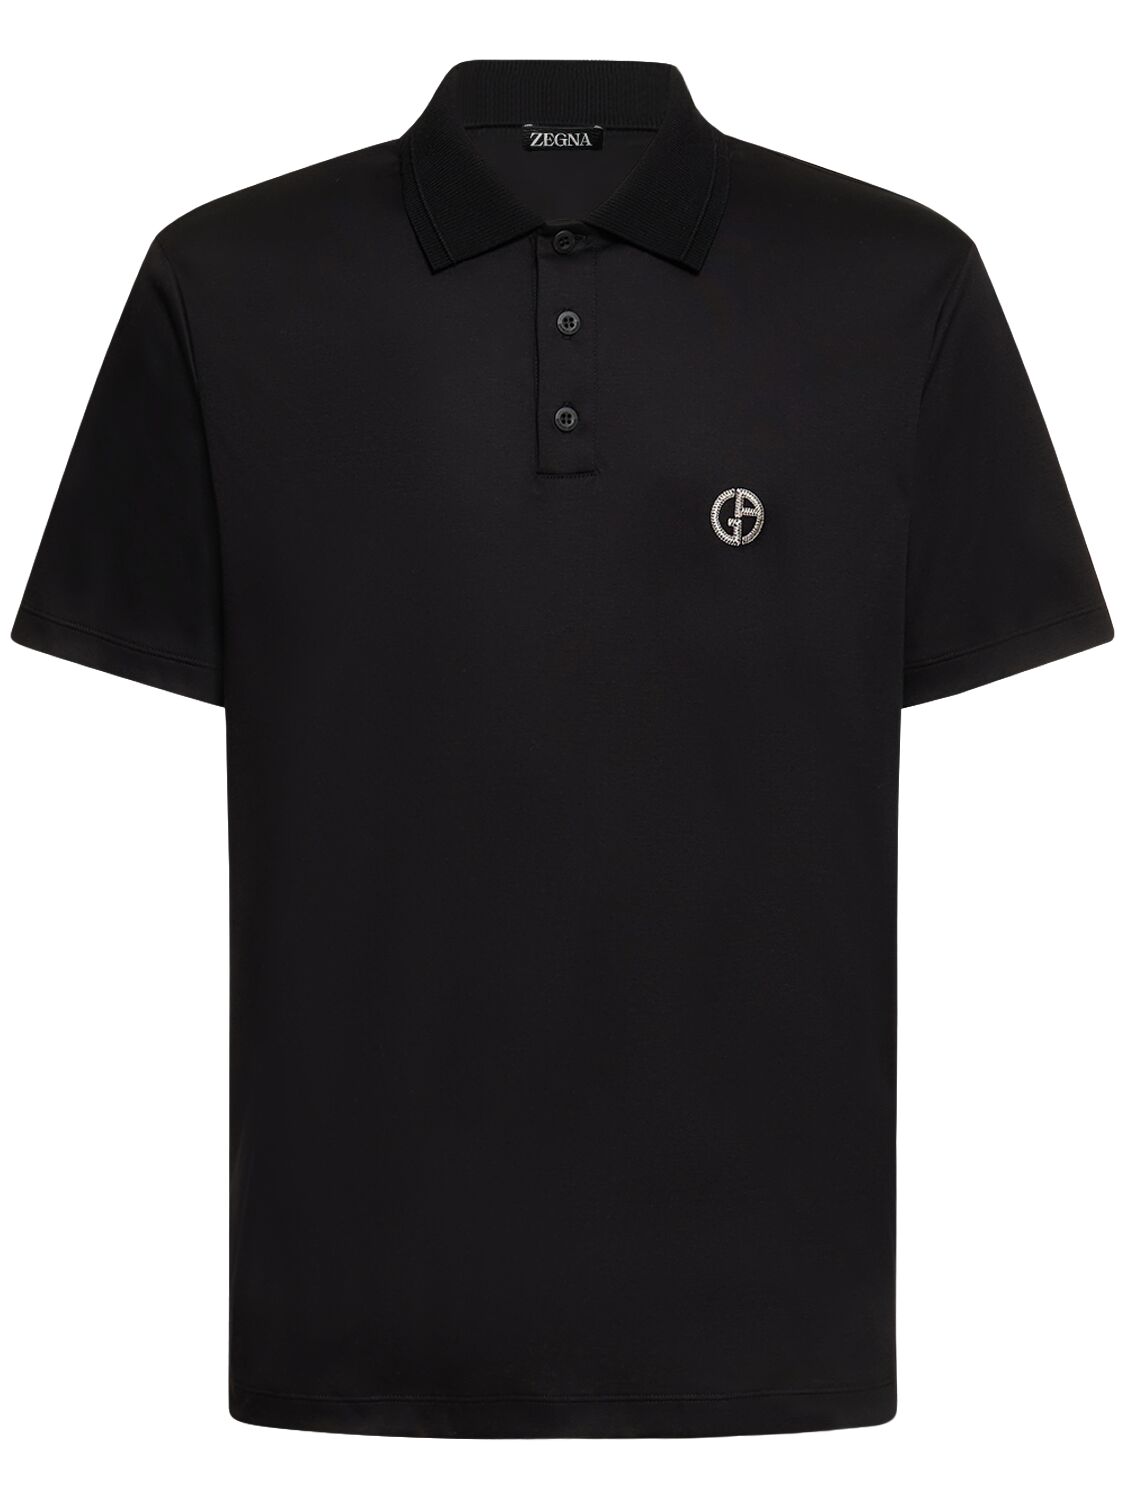 Giorgio Armani Embroidered Logo Polo In Black